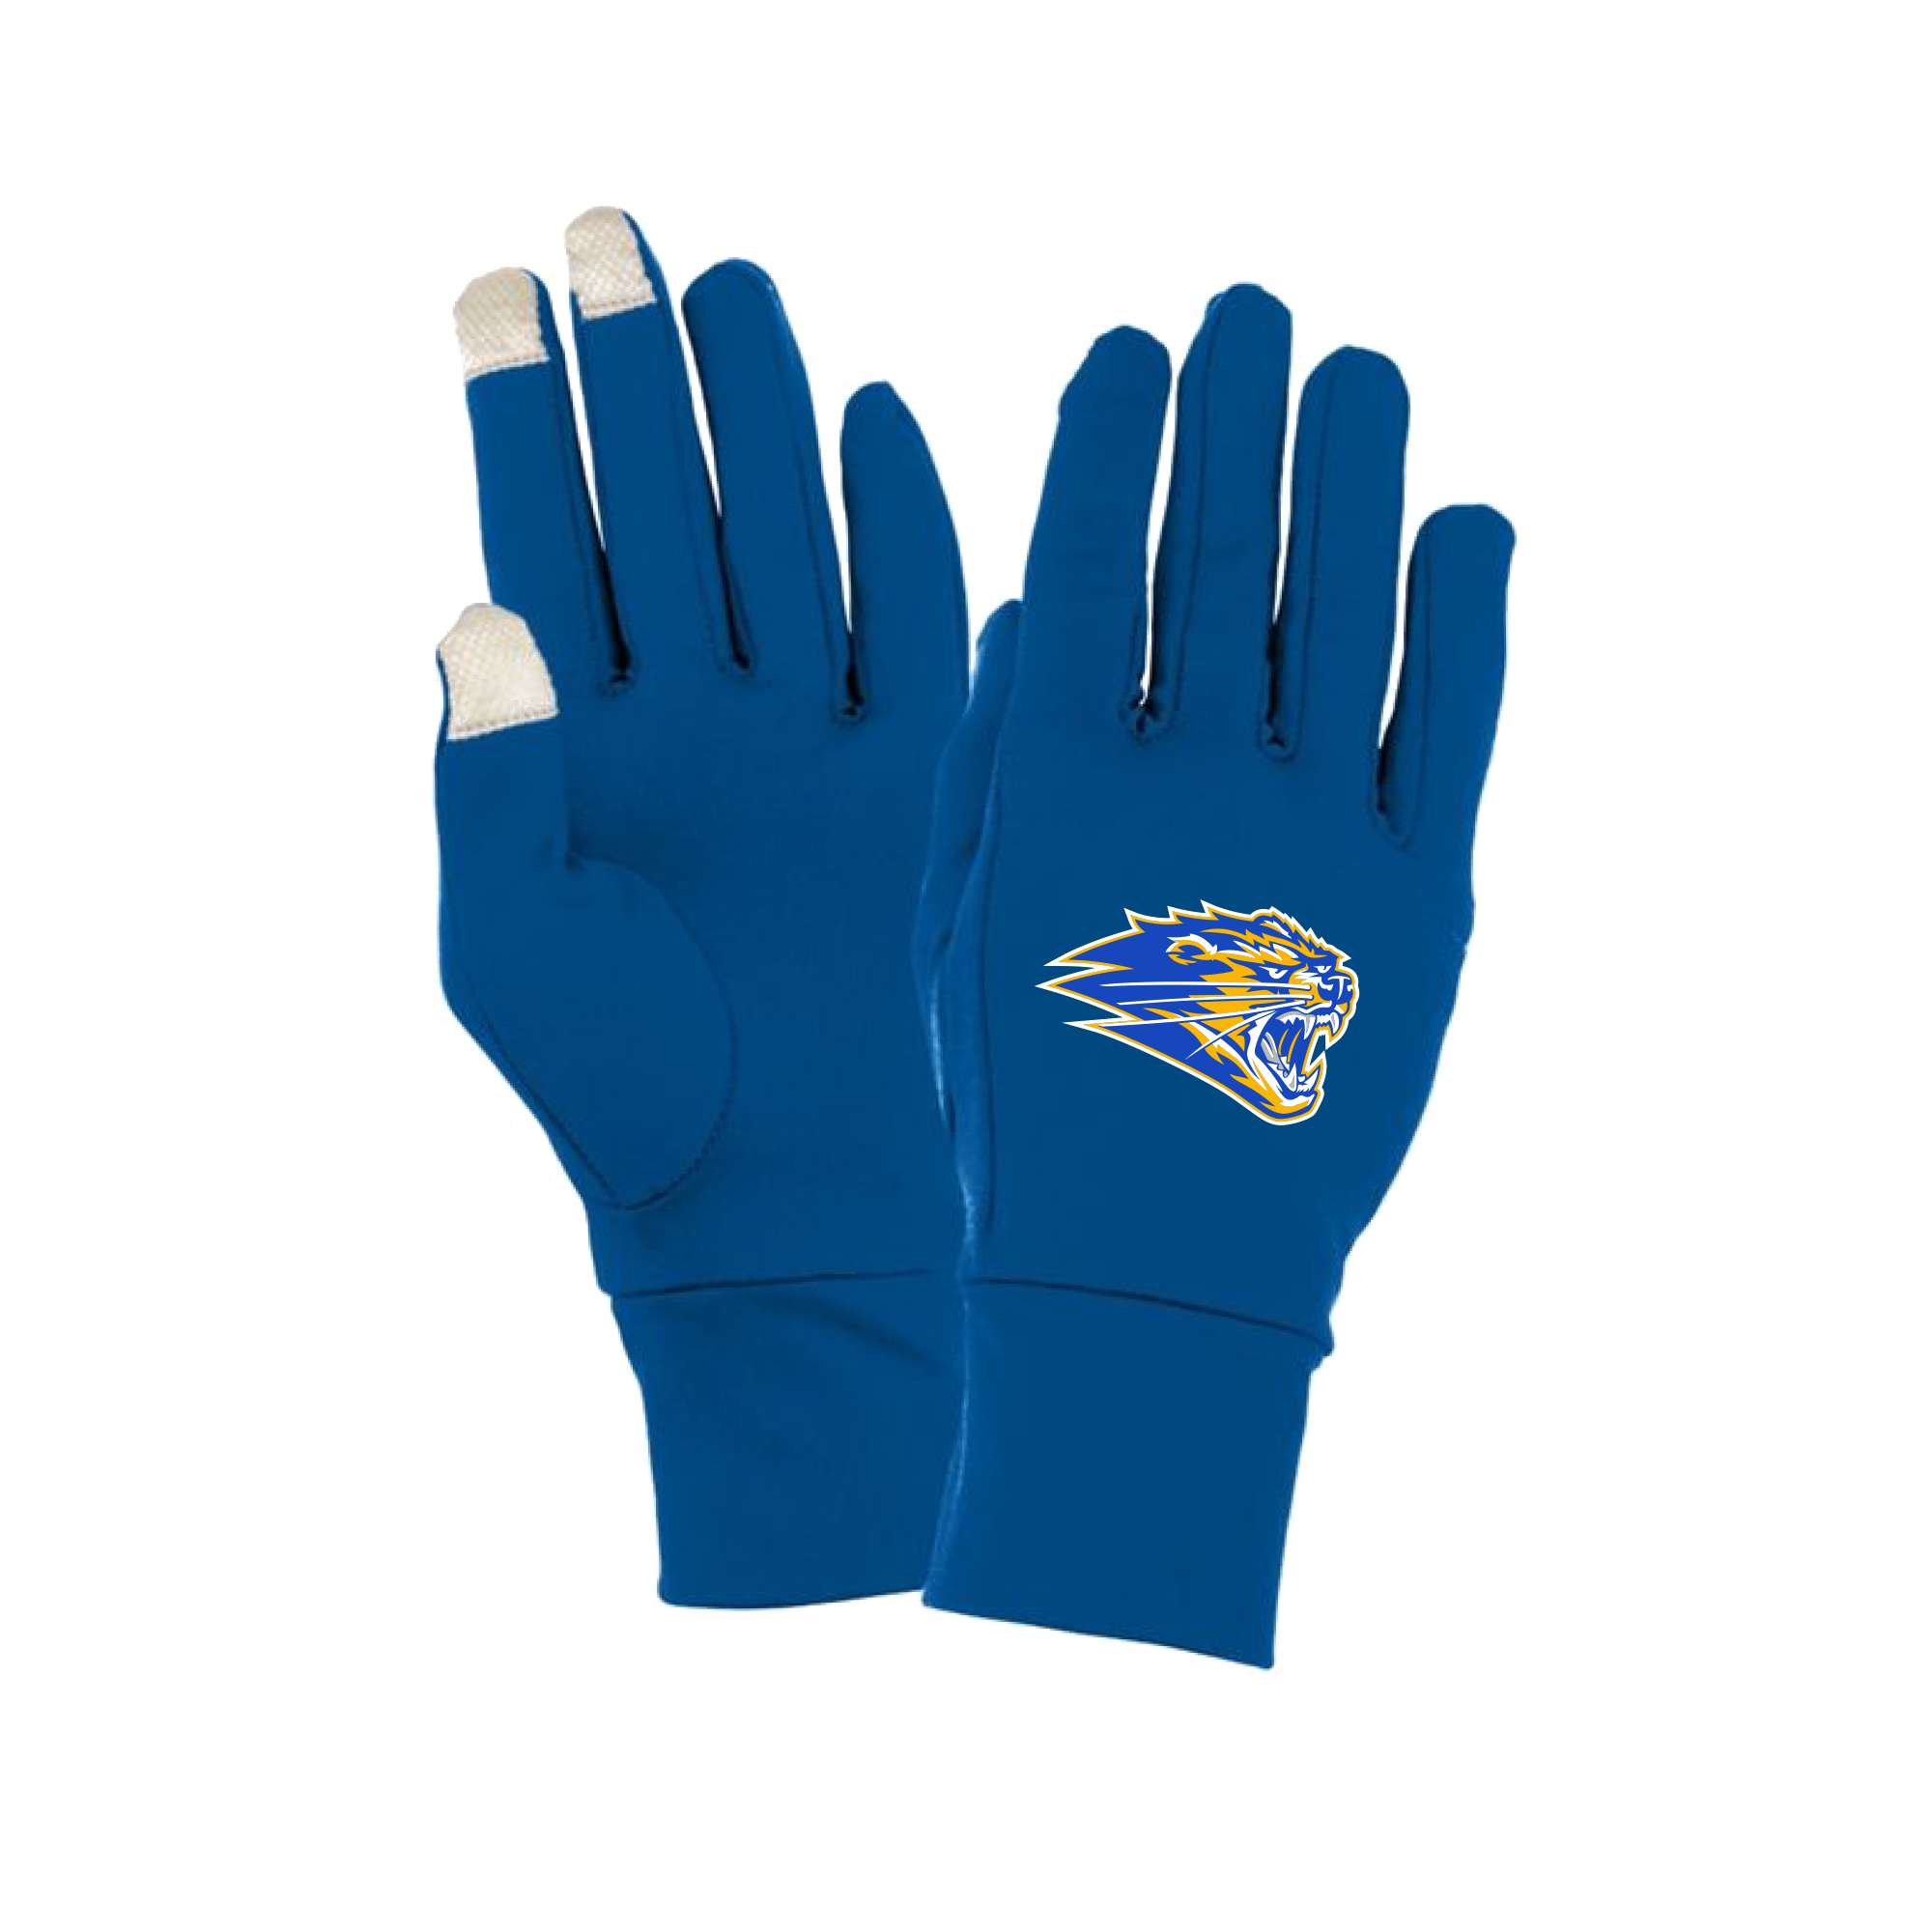 CT Bearcats - Tech Gloves